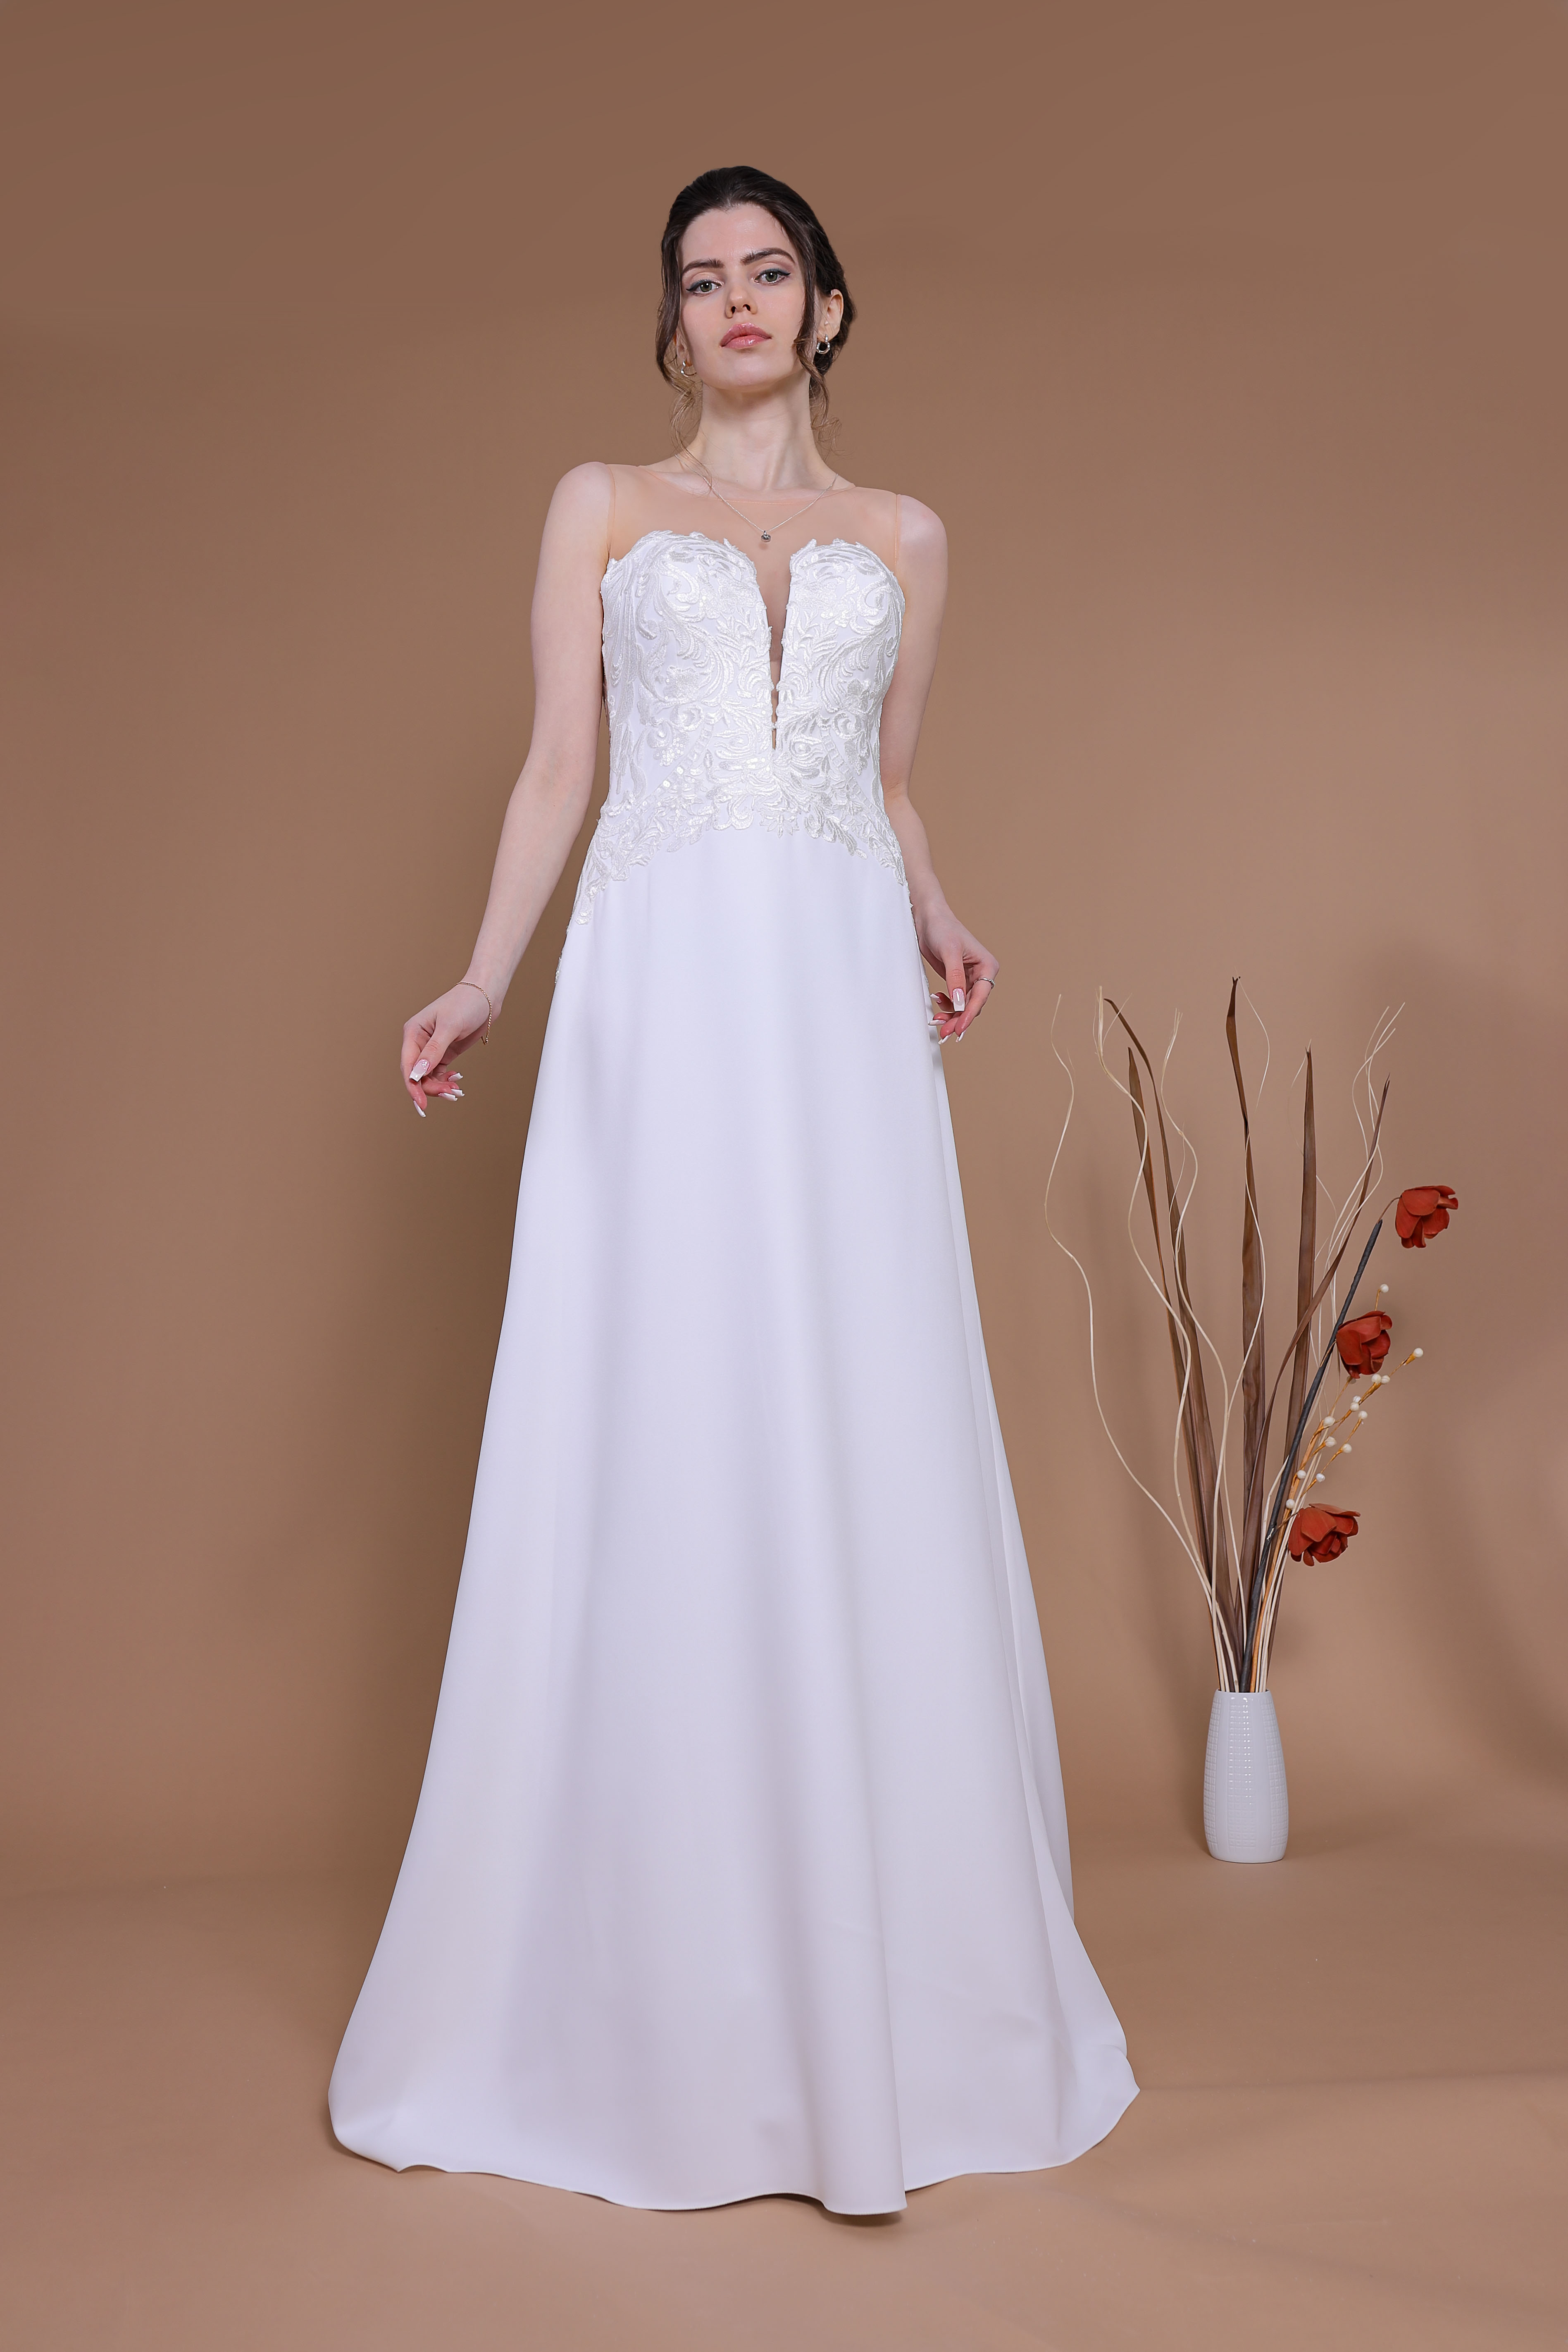 Schantal Brautkleid aus der Kollektion „Traum“, Modell 28030 - 2.